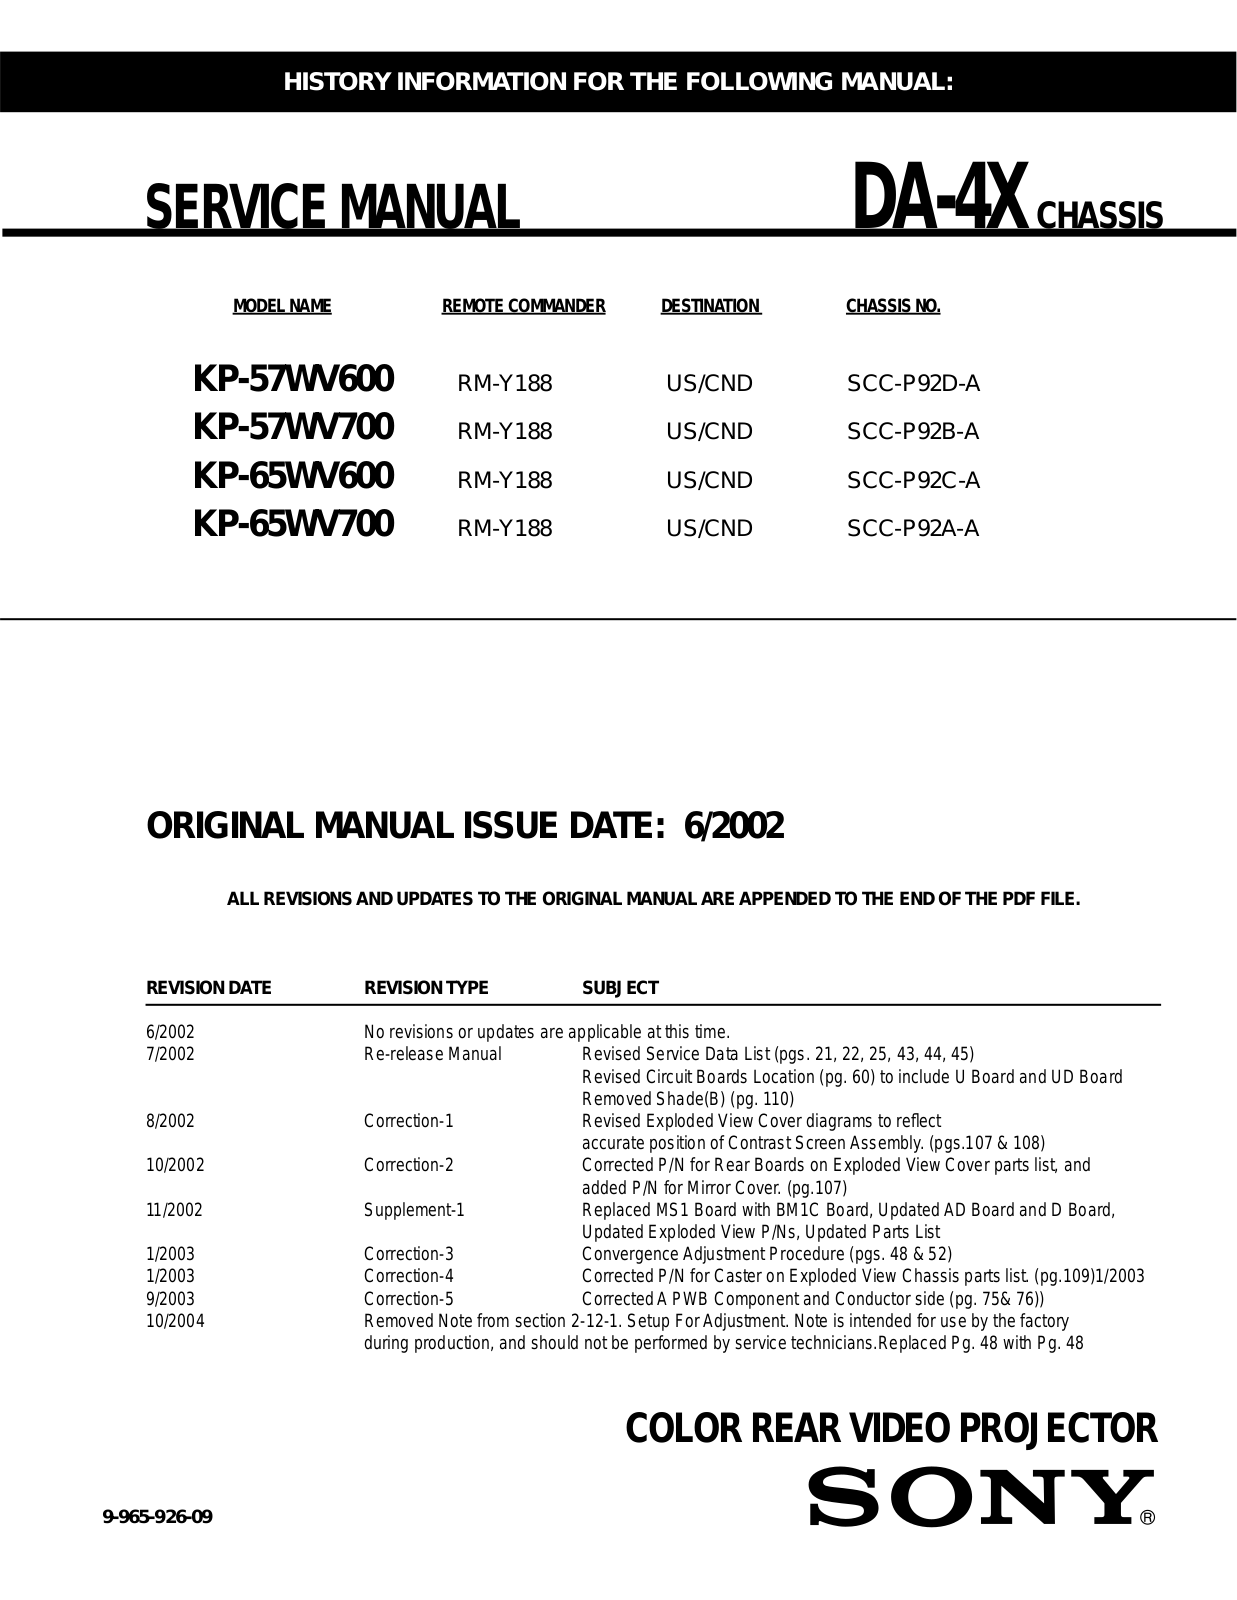 Sony KP-65WV700, KP-65WV600, KP-57WV700, KP-57WV600, DA-4X Service Manual